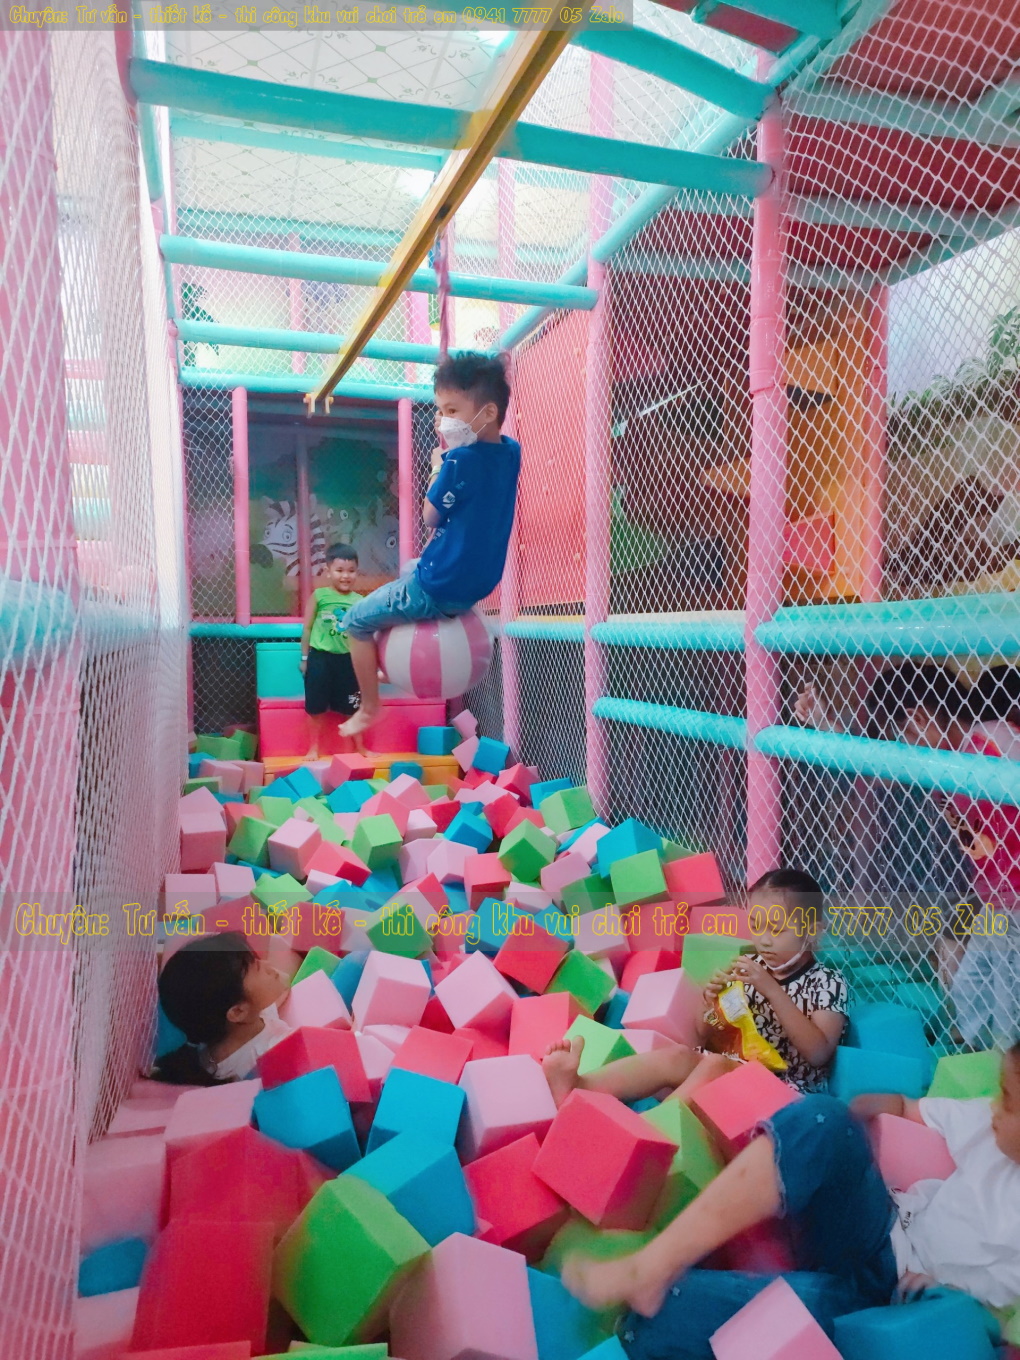 Khu vui chơi trẻ em trong nhà ở Tiền Giang.